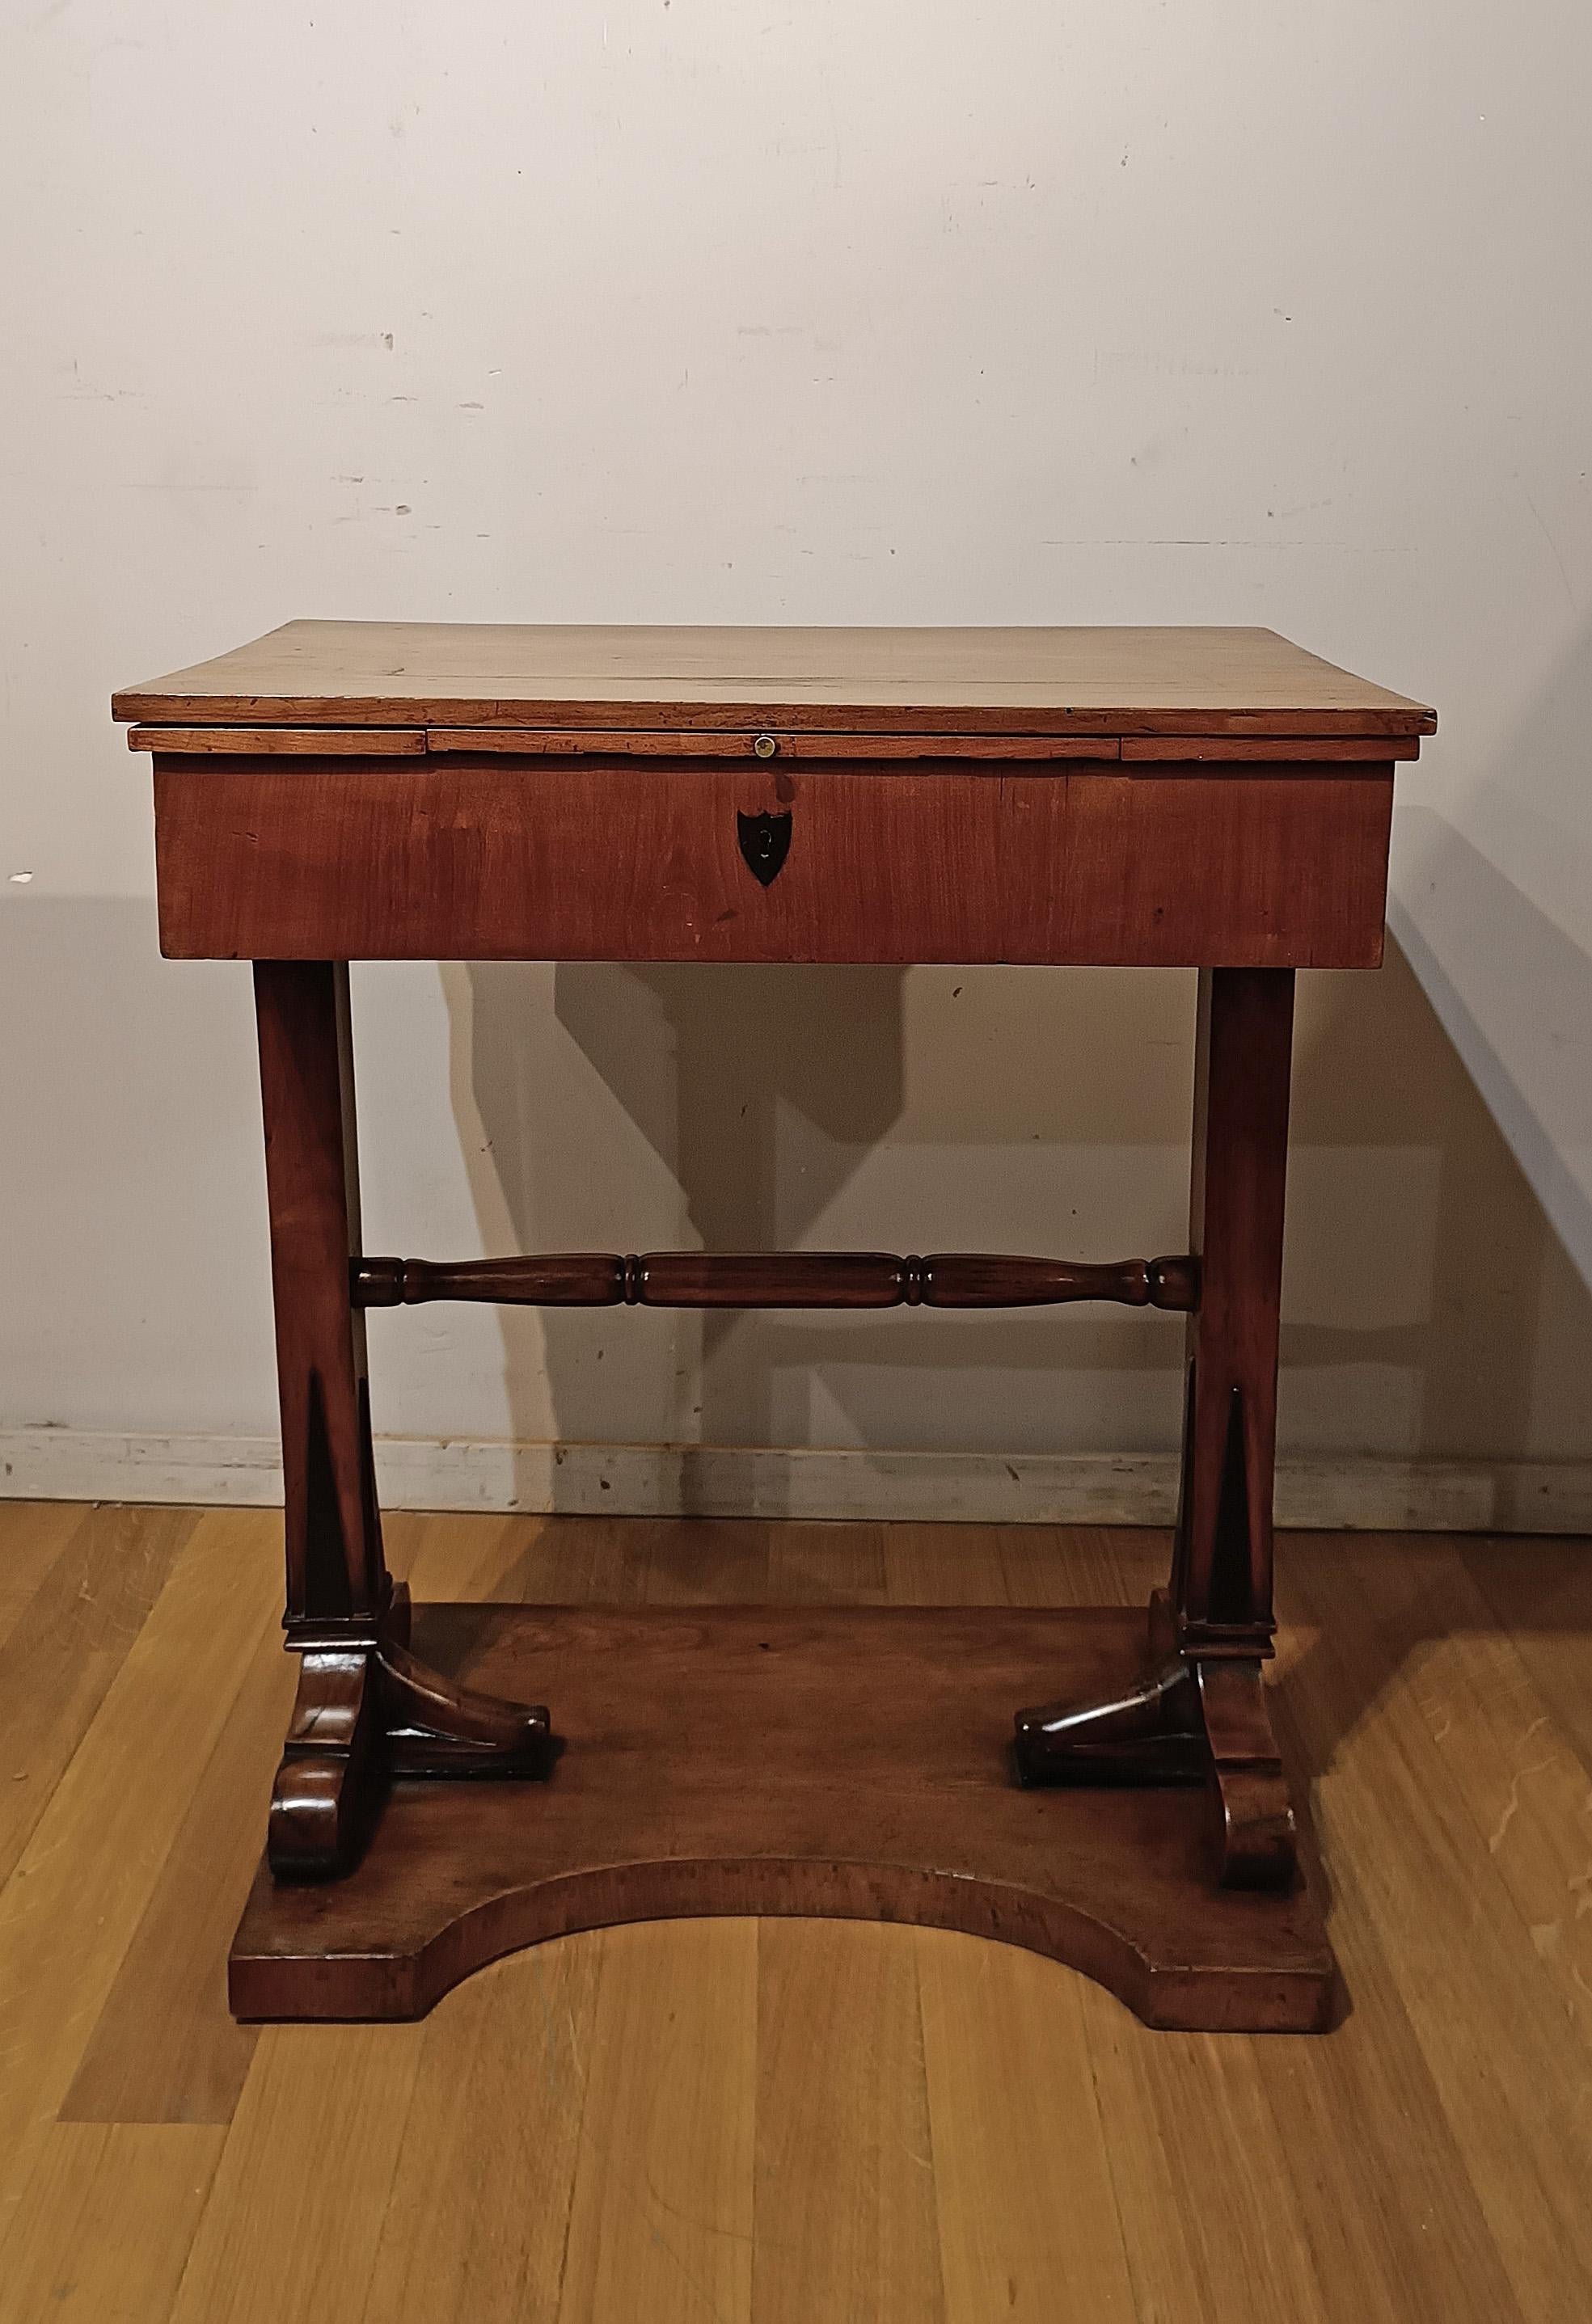 Cette splendide et raffinée table de travail en cerisier, de fabrication toscane du début du XIXe siècle, est une pièce unique qui peut également être utilisée comme petit bureau. Son ancienne fonction était celle d'une table de travail, comme en